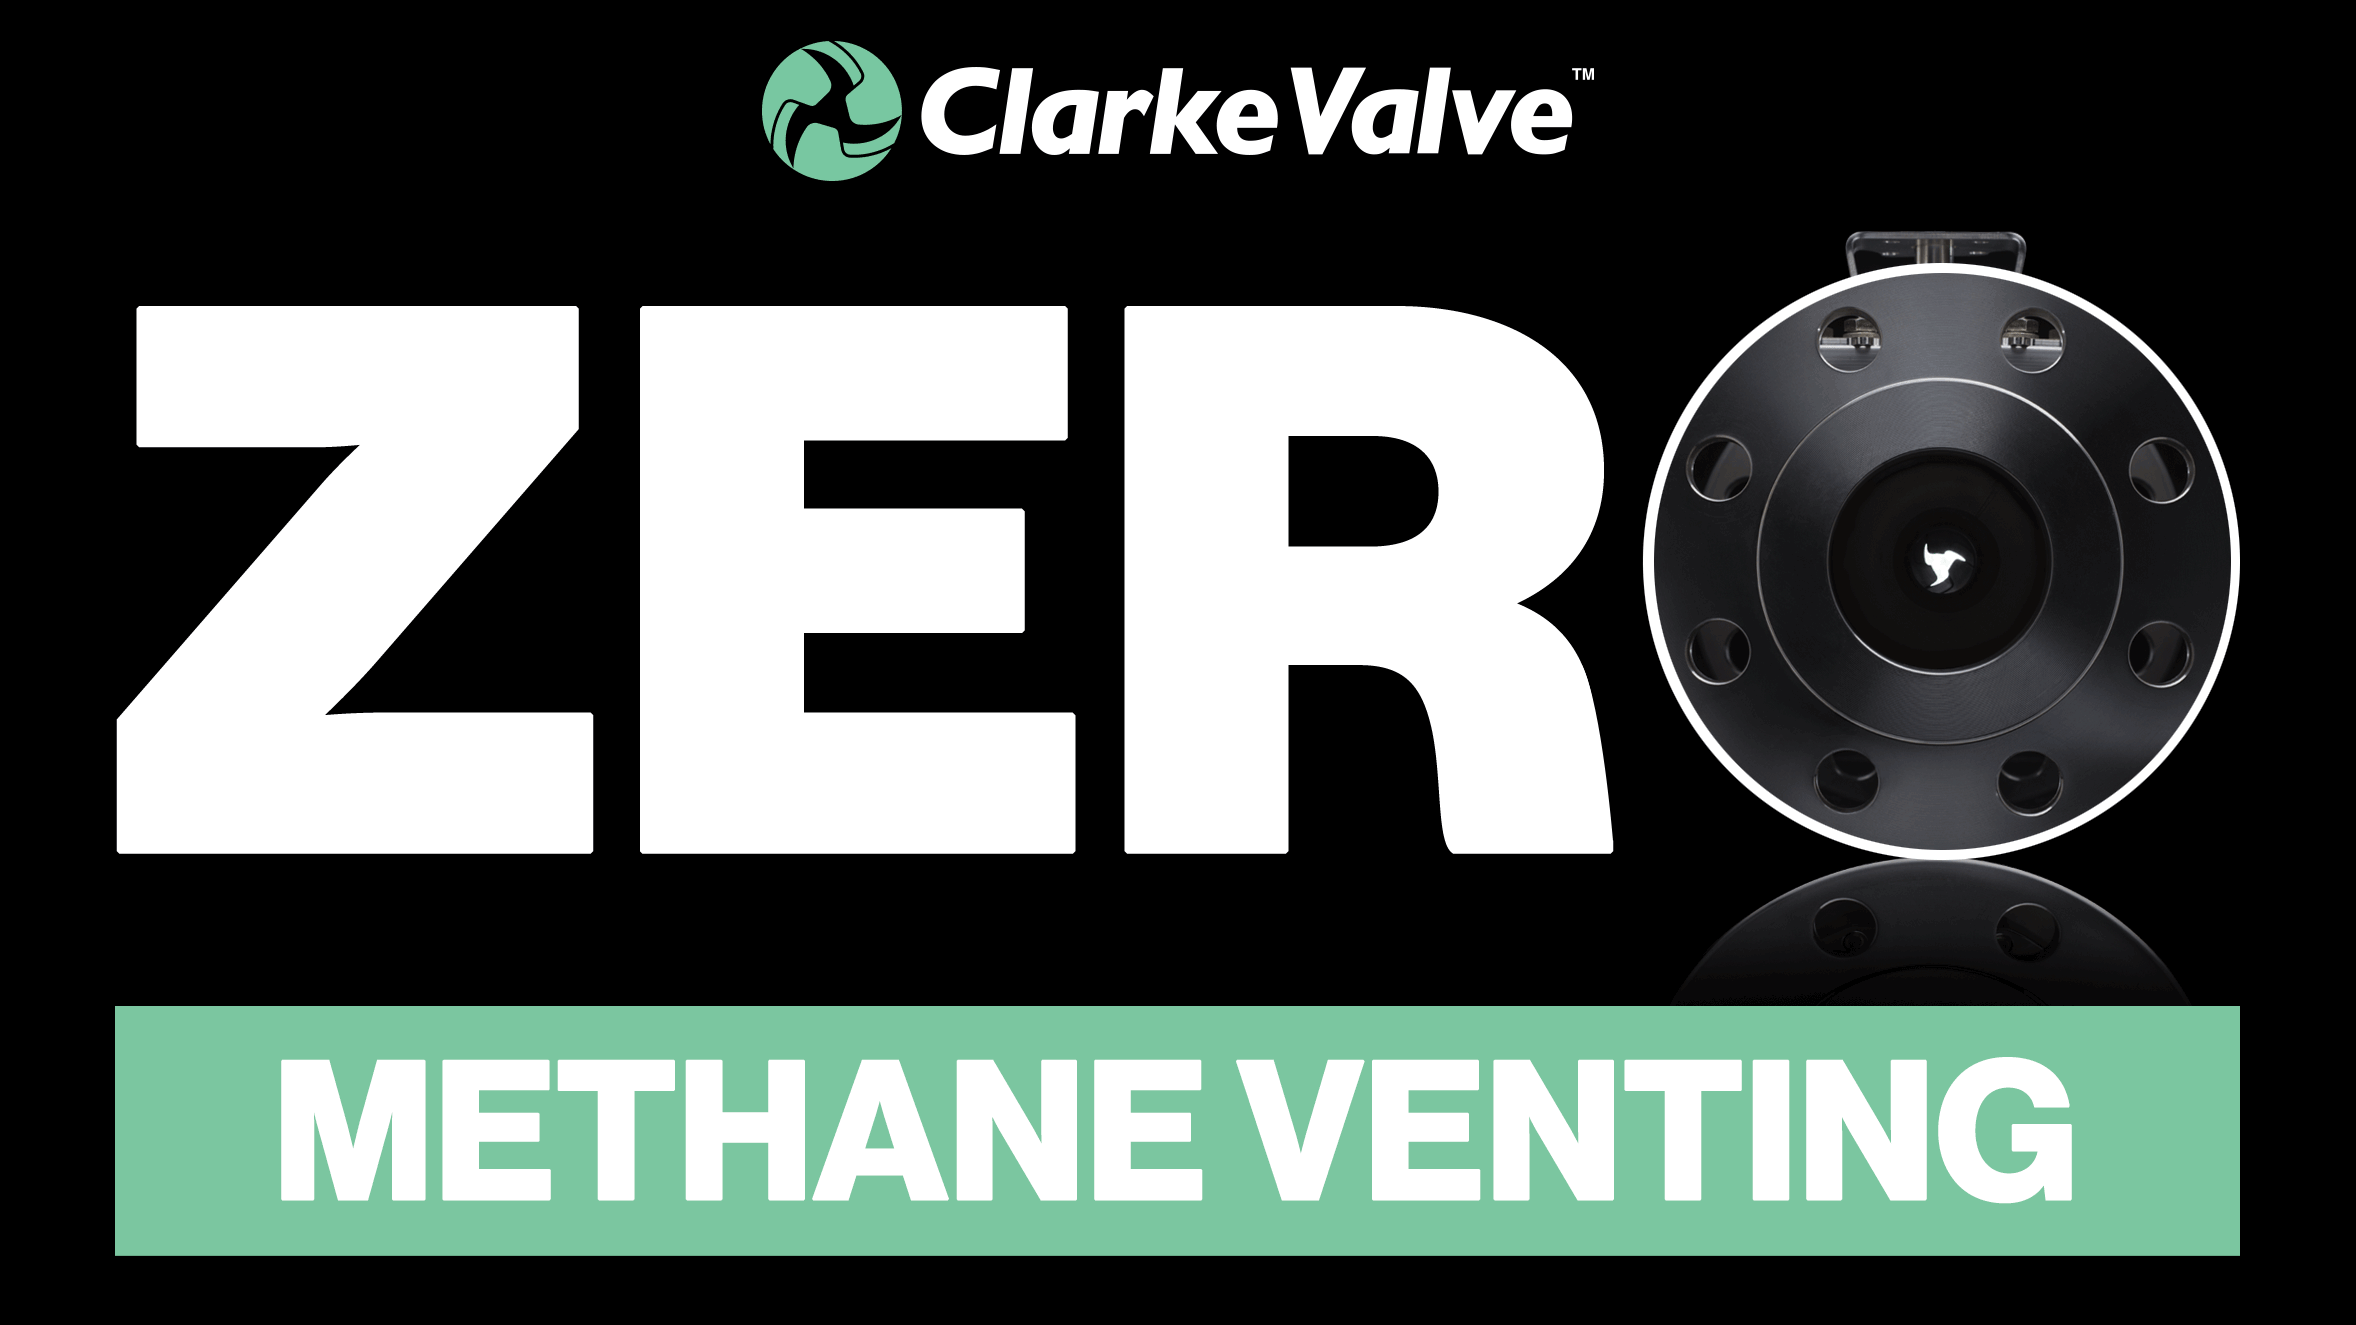 clarke valve zero methane venting